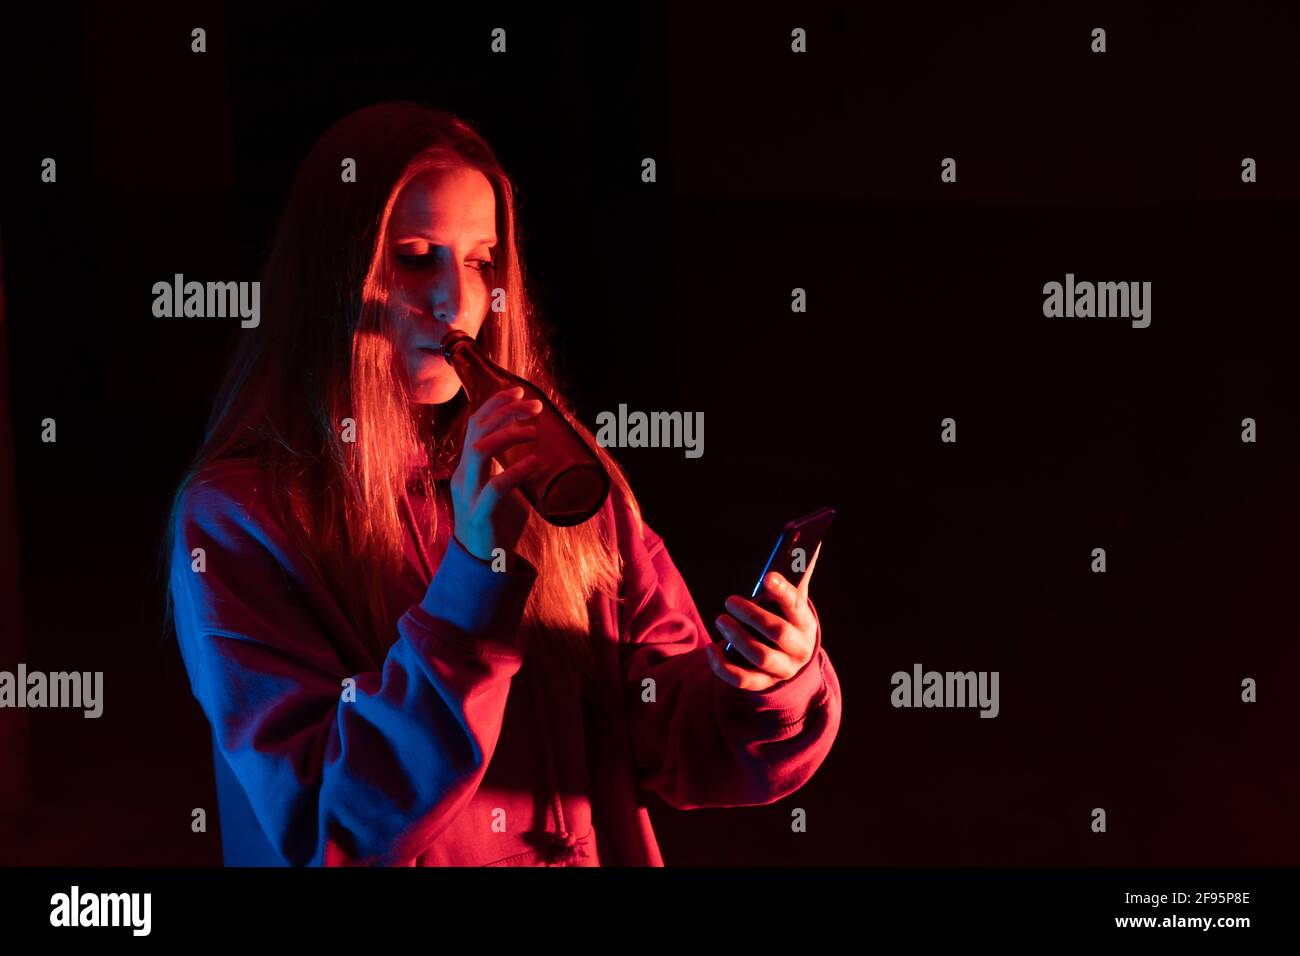 Une jeune fille boit une bière en regardant le smartphone Dans les mains.Portrait de la femme caucasienne sur le fond sombre du studio avec Lumières fluo colorées.nuit c Banque D'Images